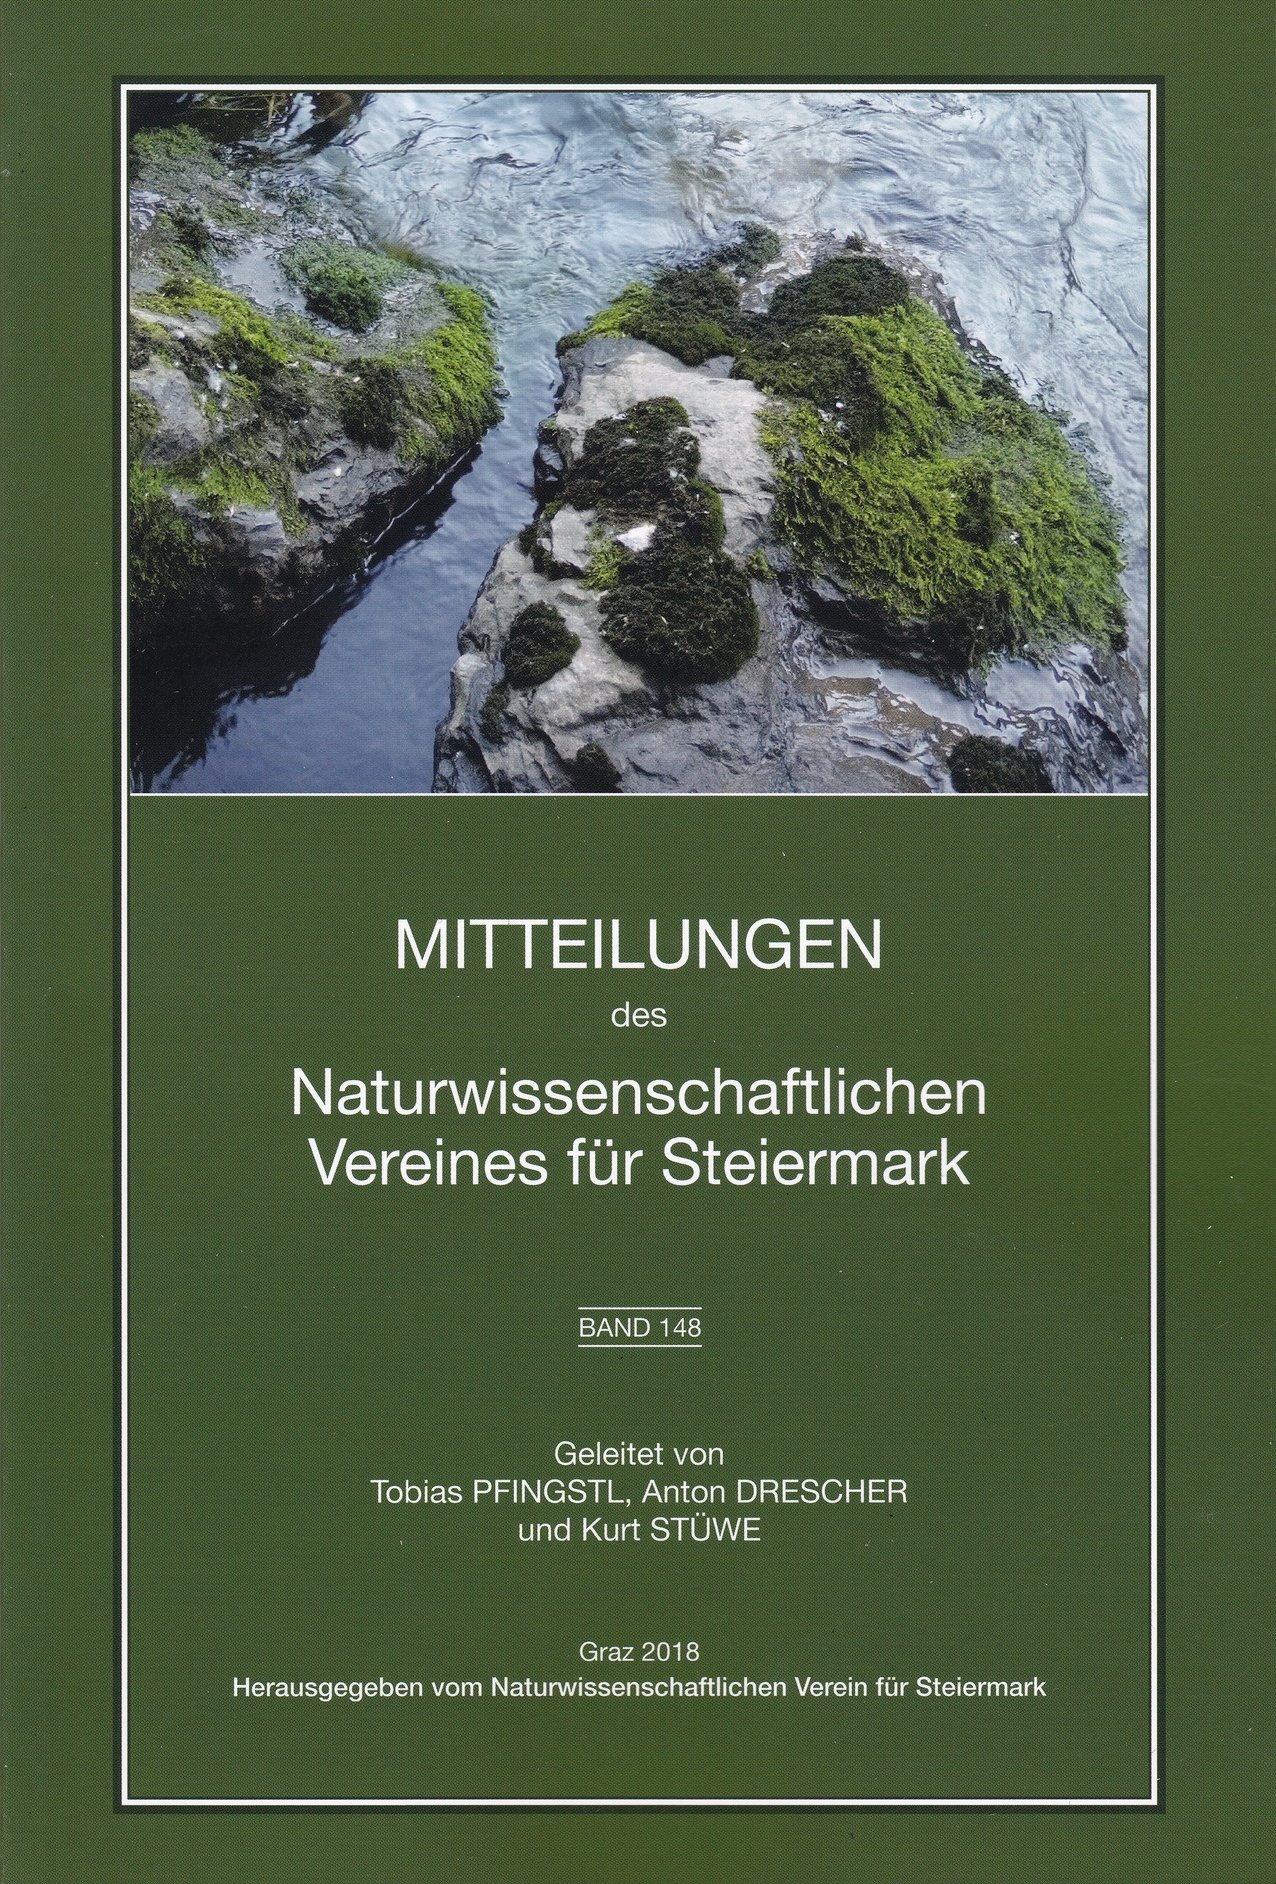 Mitteilungen des Naturwissenschaftlichen Vereines für Steiermark 2018/148. kötet (Rippl-Rónai Múzeum CC BY-NC-ND)